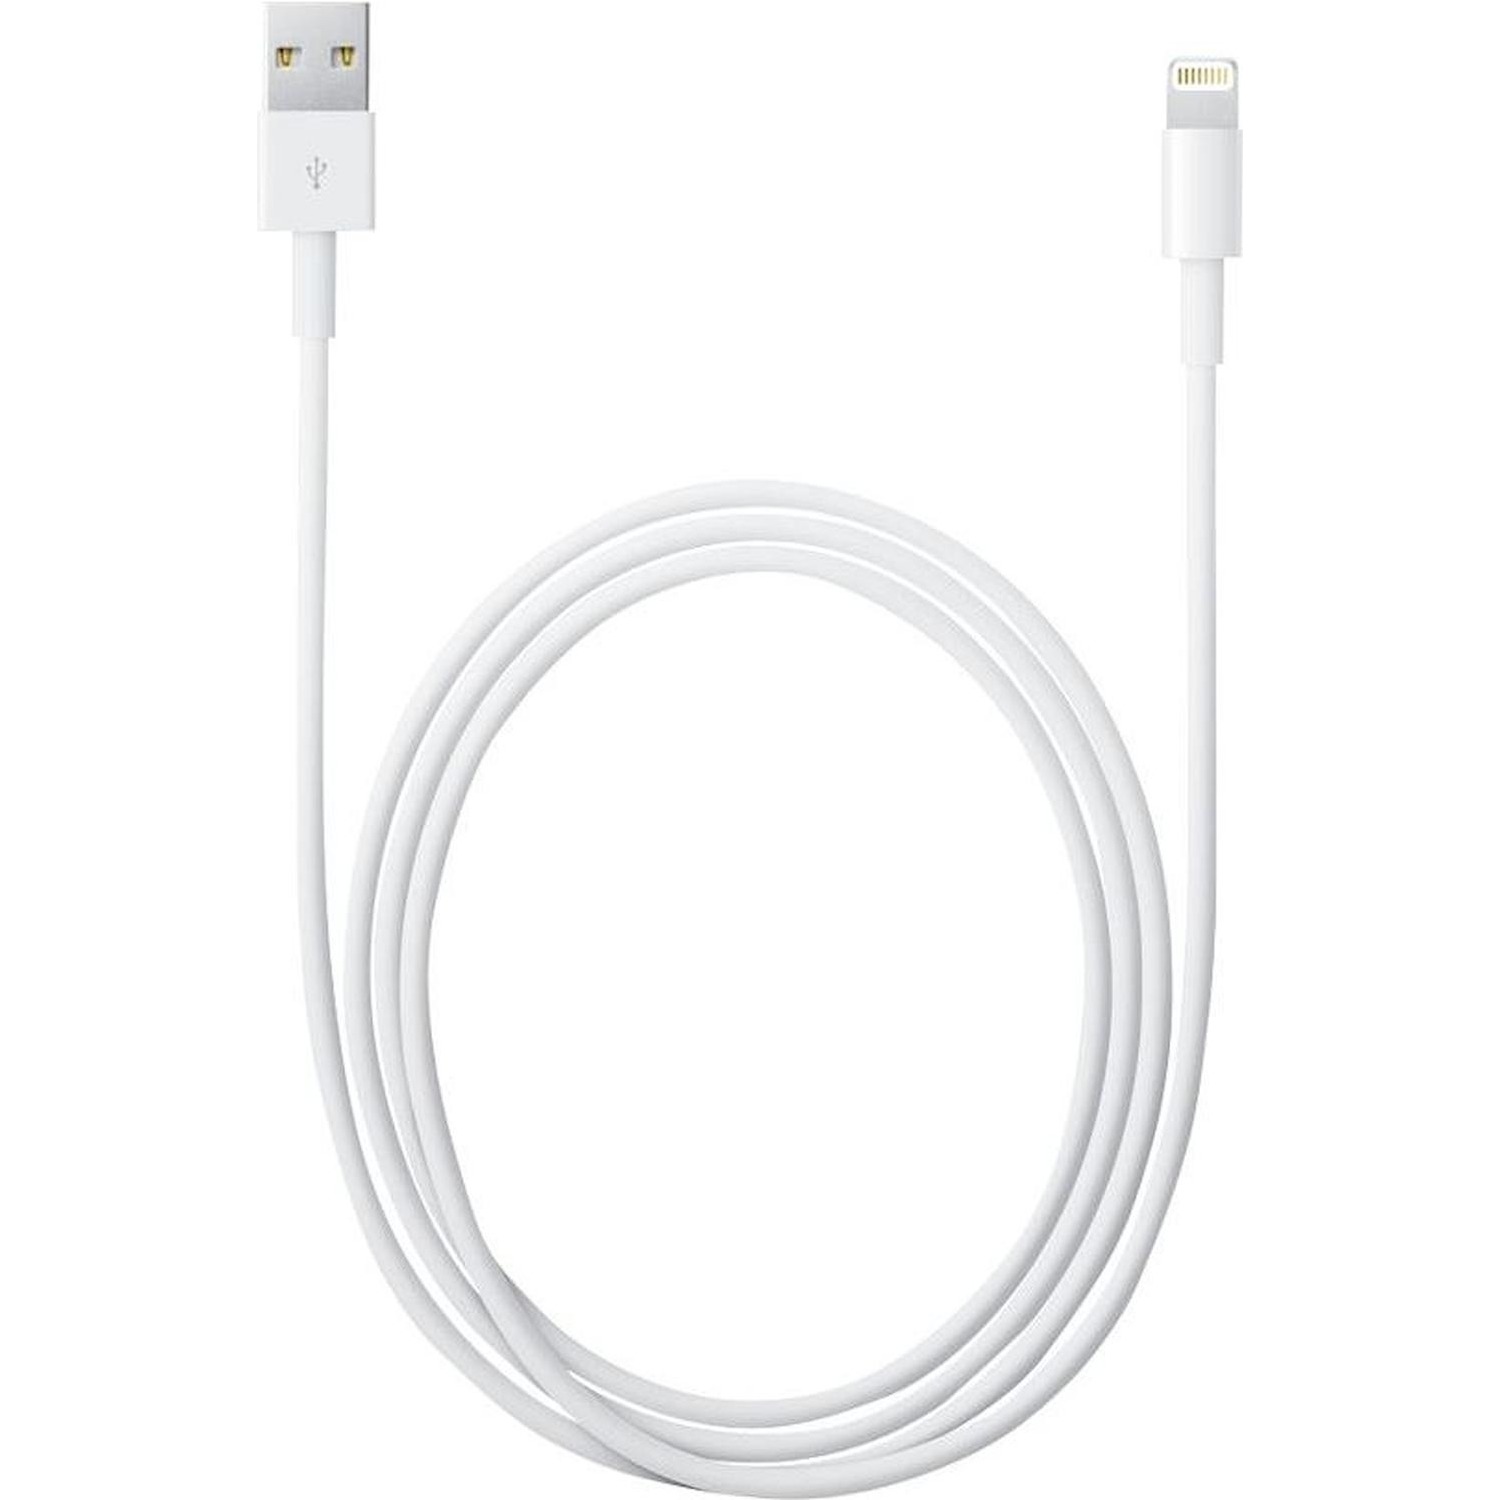 Immagine per Cavo Apple lightning/USB 2 metri per iPhone iPad da DIMOStore